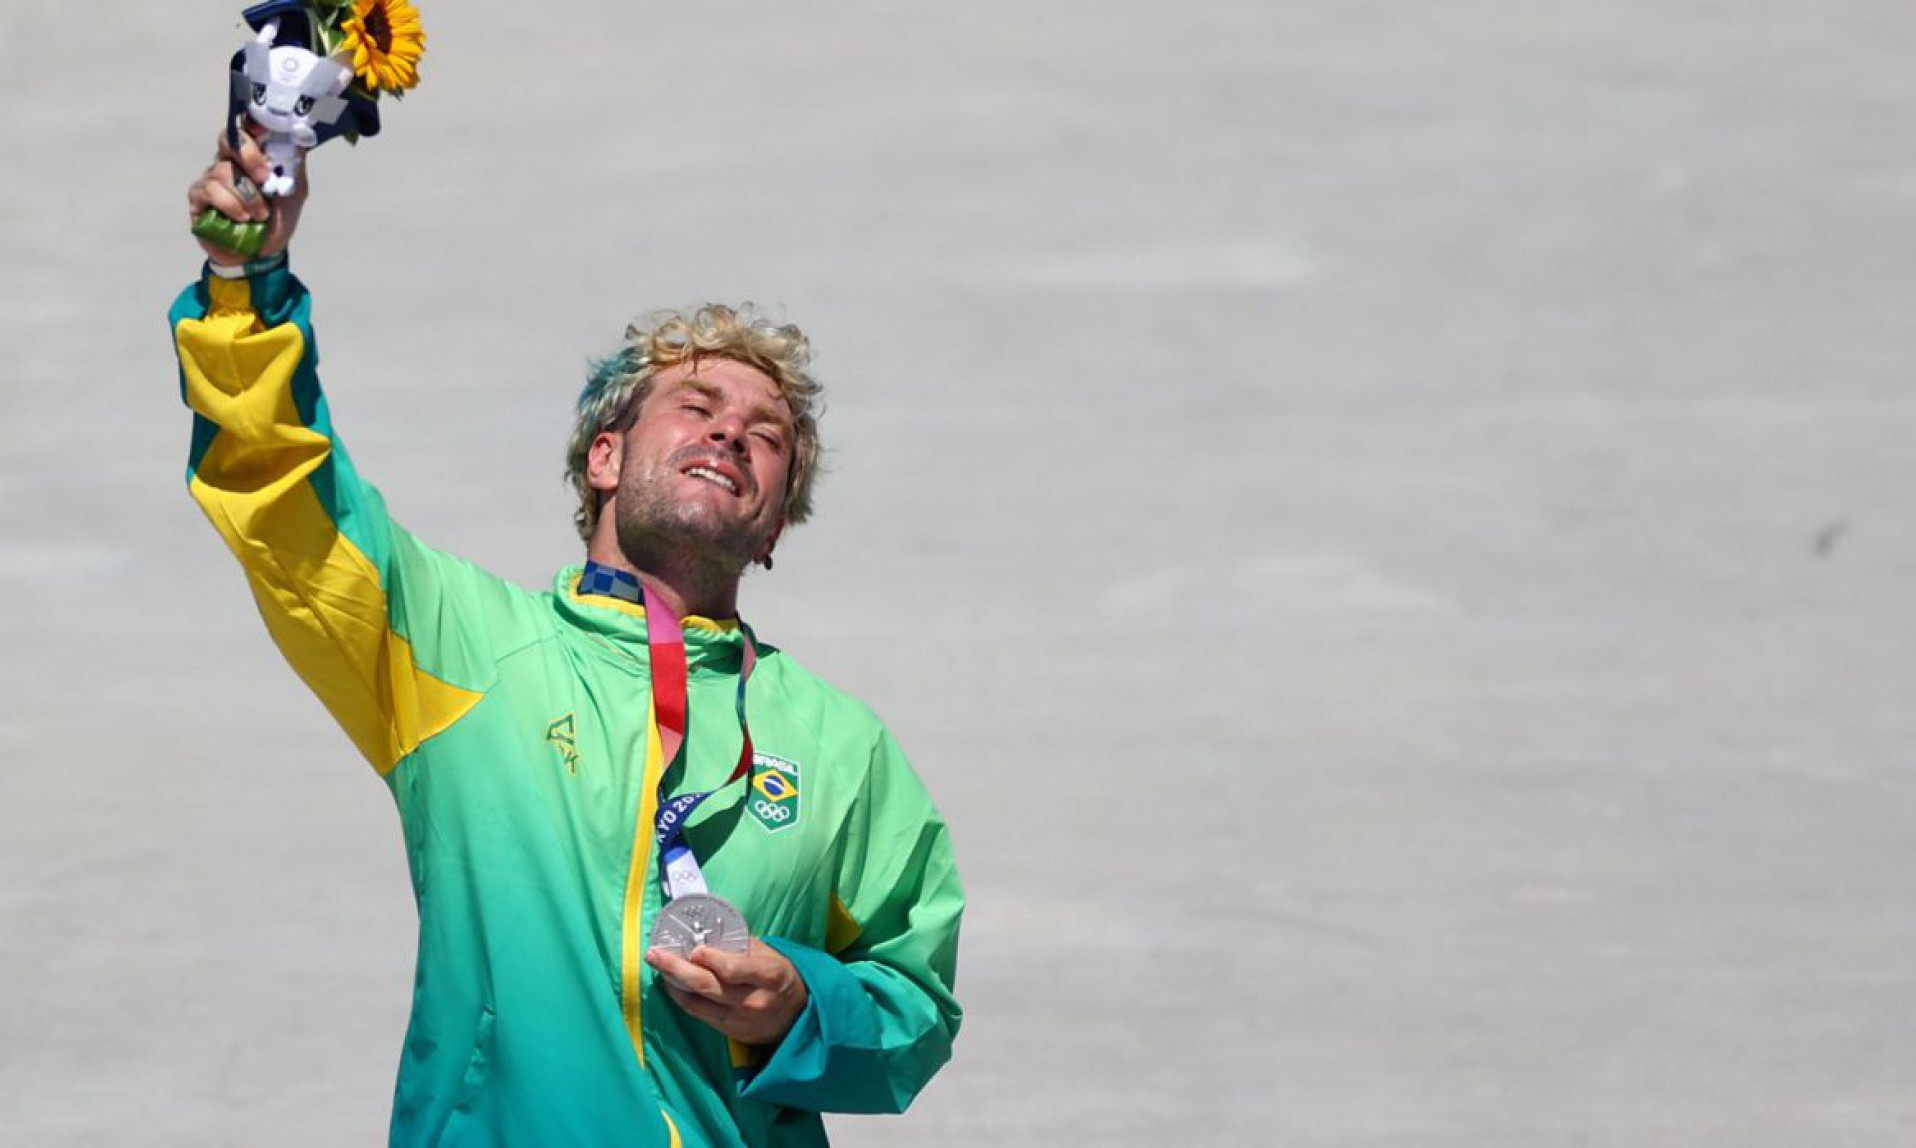 Pedro Barros conquista a medalha de prata no Skate Park nos Jogos